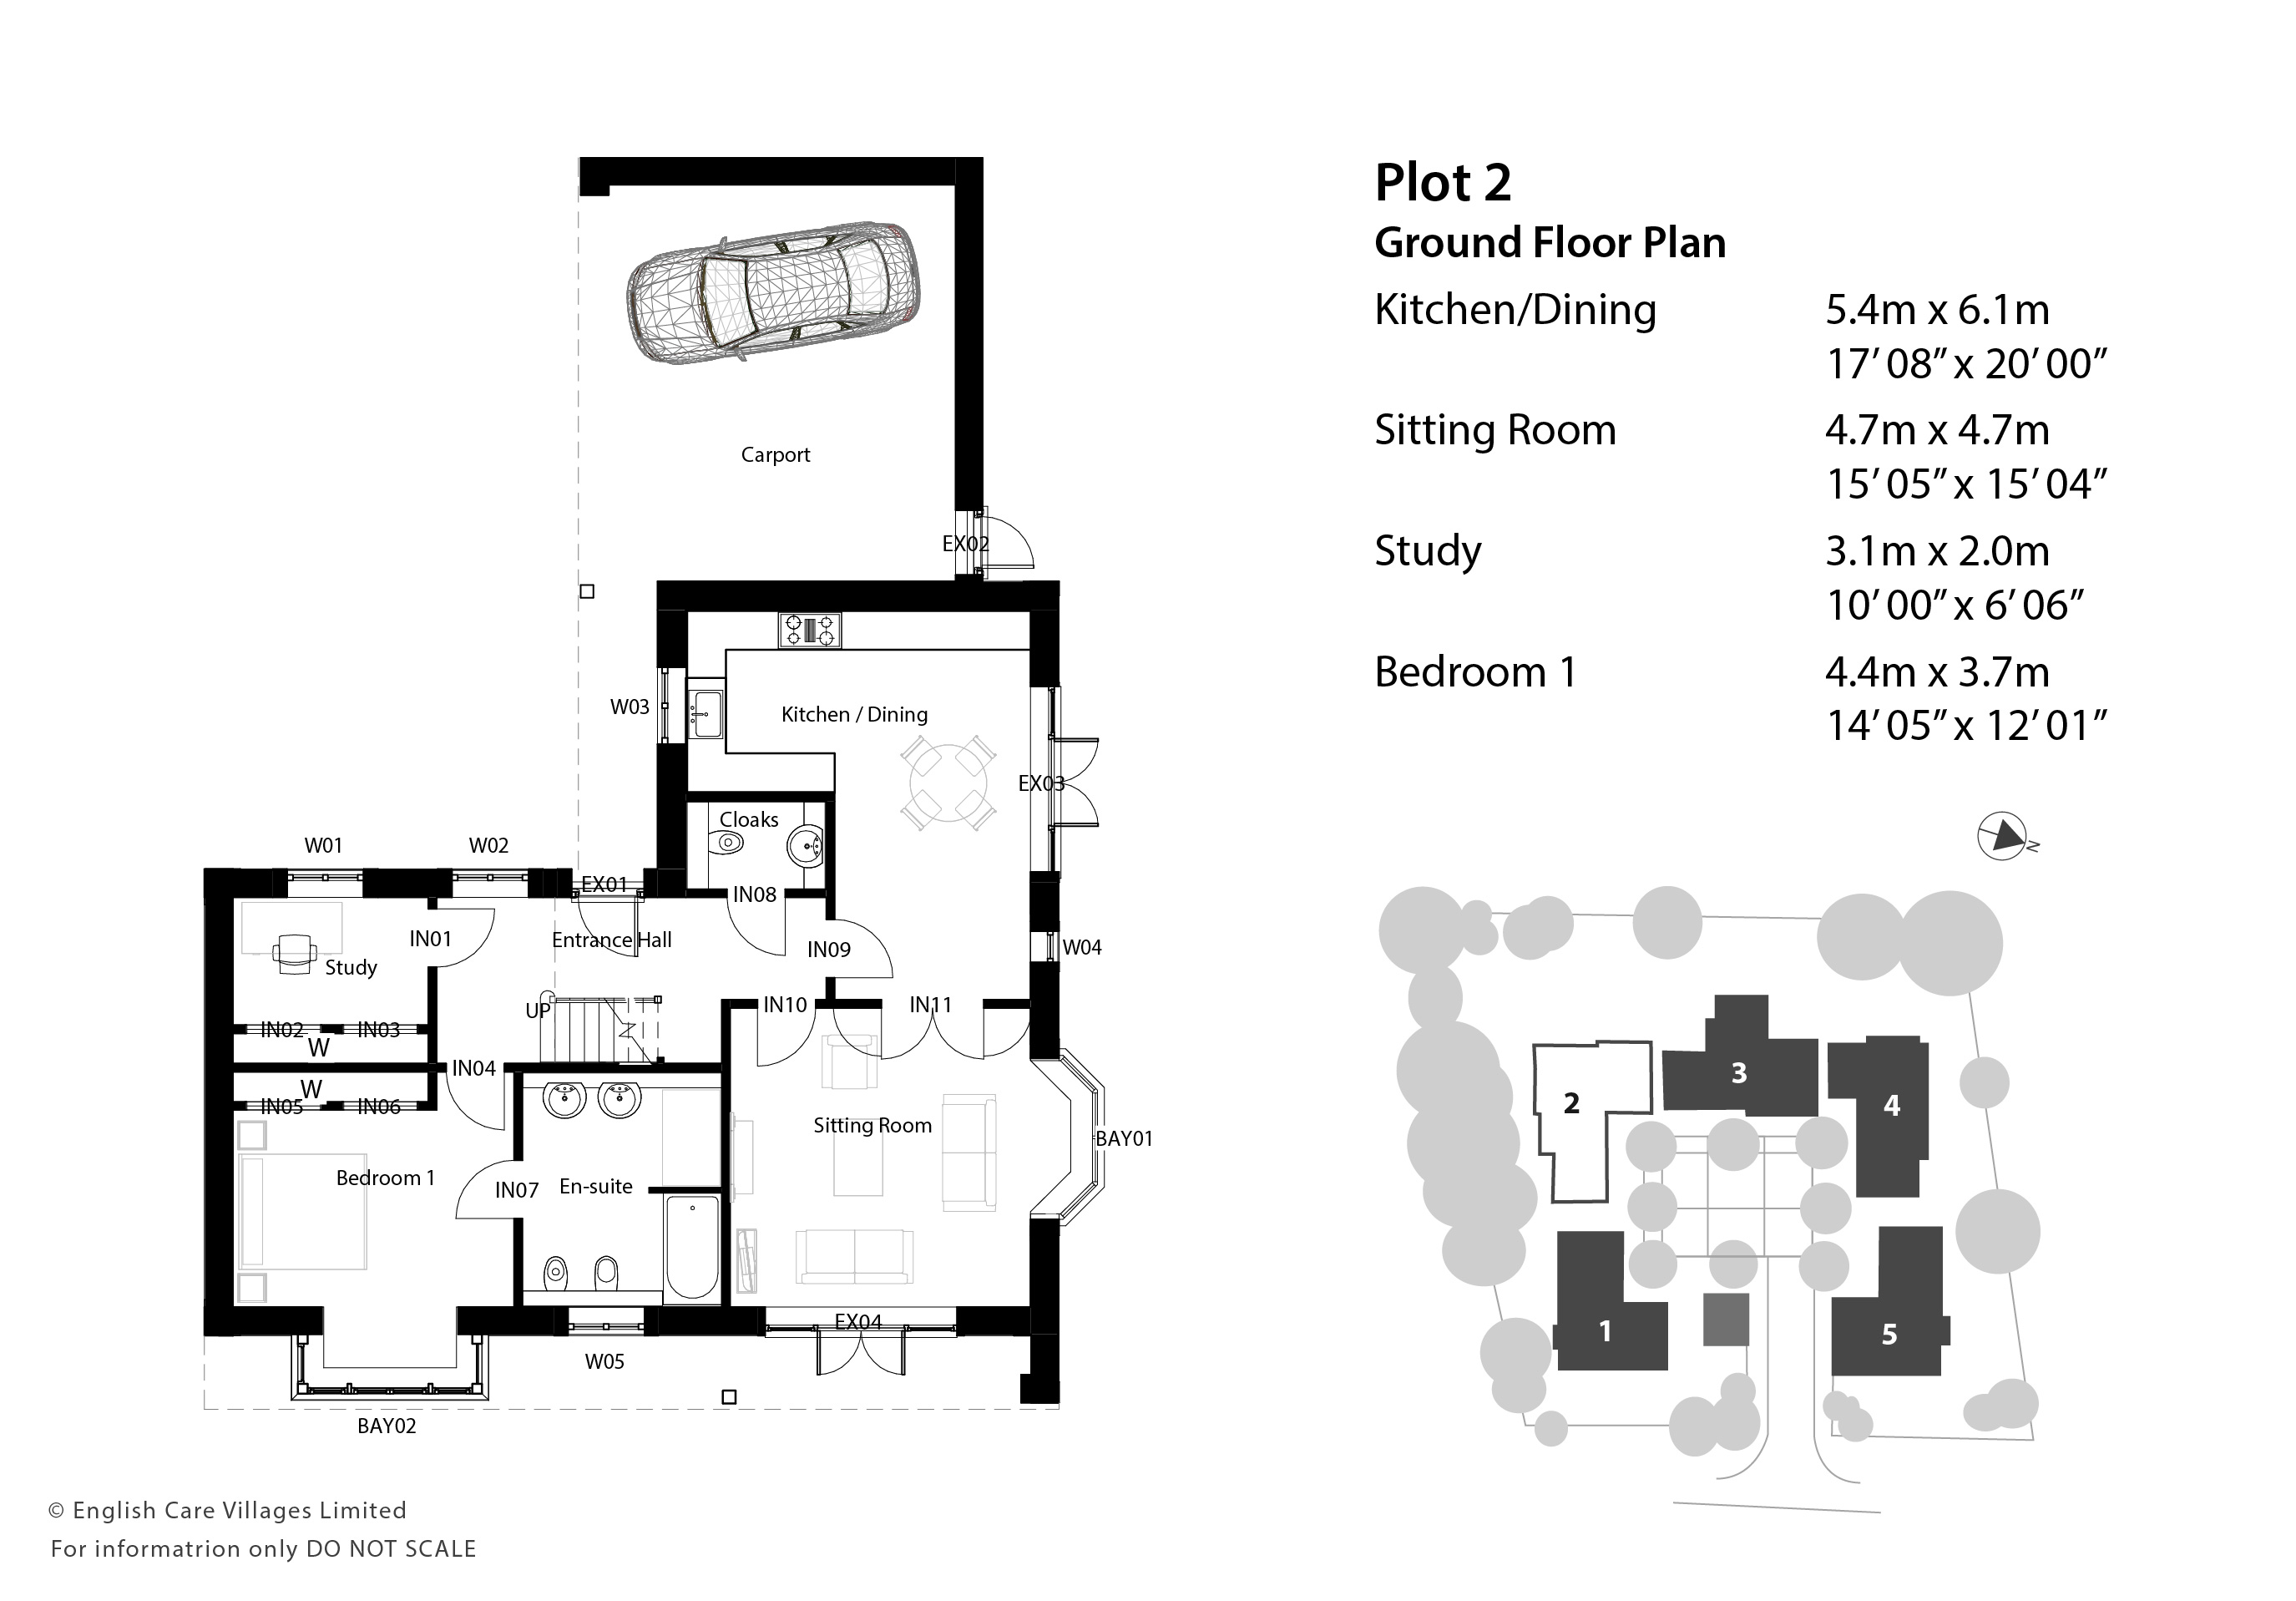 Plot 2 Ground Floor Plans